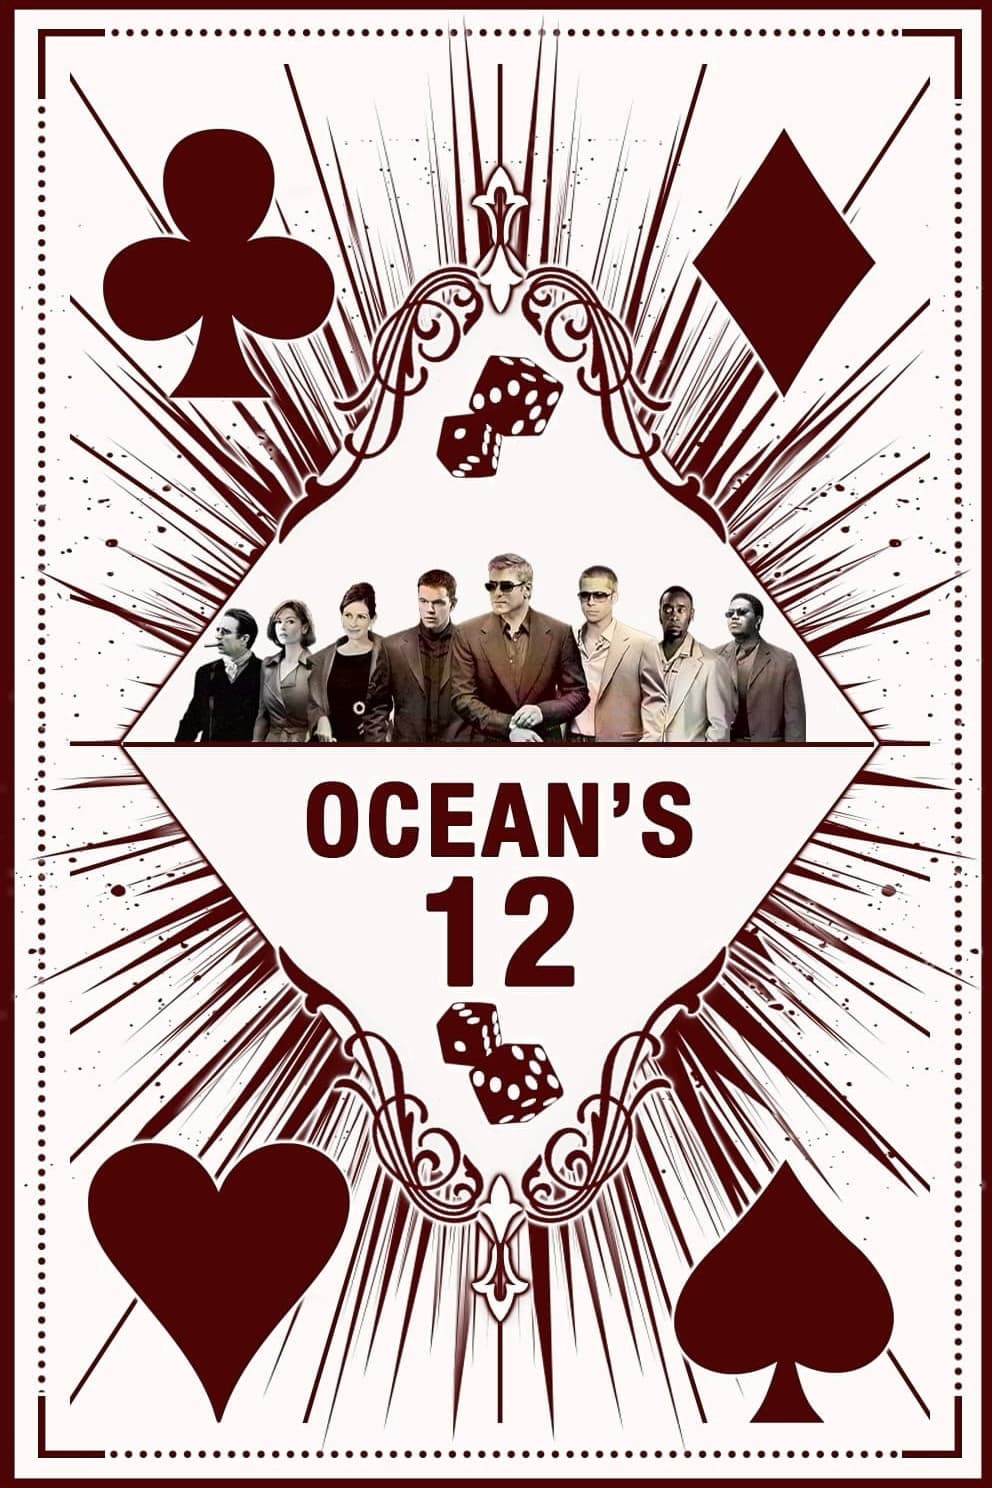 Ocean's Twelve